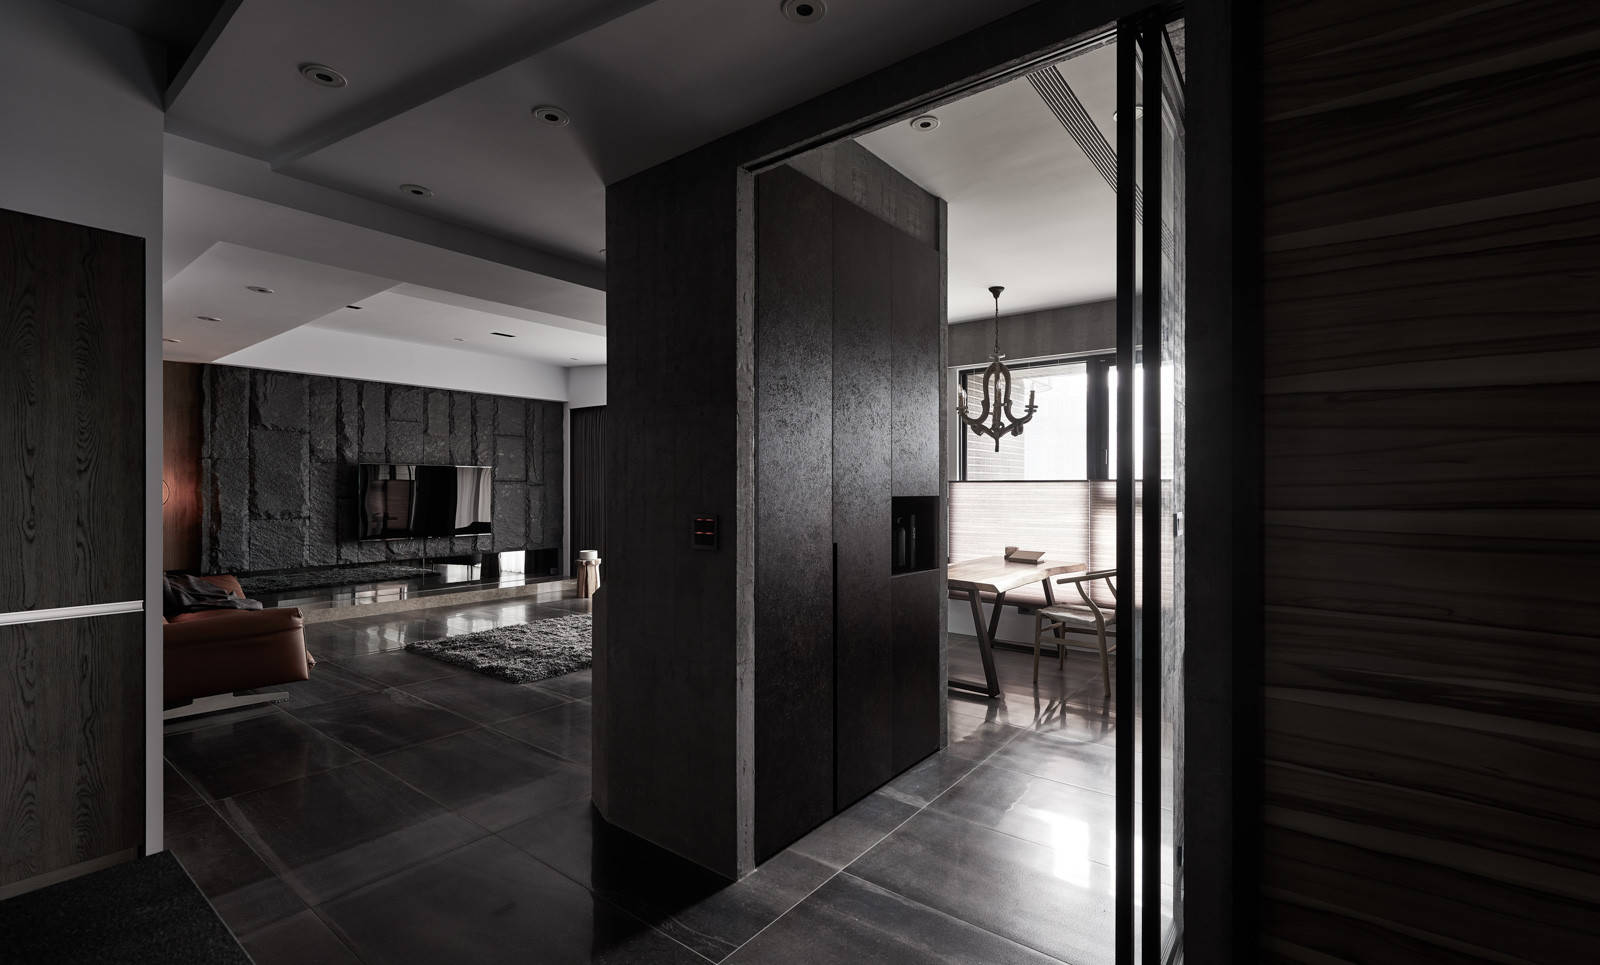 文雅黑色系选择酷酷的黑色作为家居主色调搭配地板和家具没